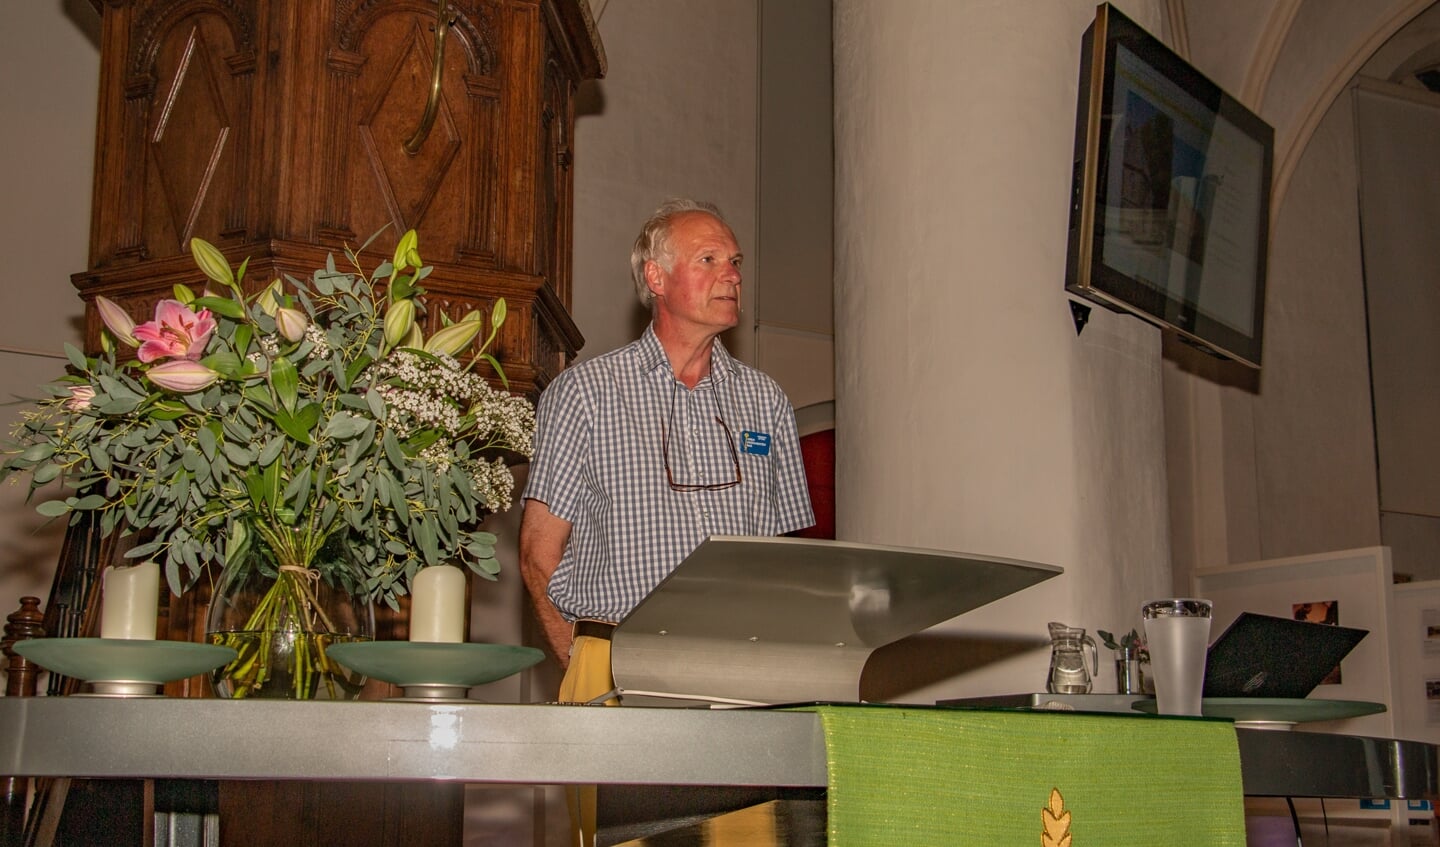 Voorzitter van Stichting Open Monumentendag Bronckhorst Han van der Lans vertelt over de Remigiuskerk tijdens de openingsavond. Foto: Liesbeth Spaansen